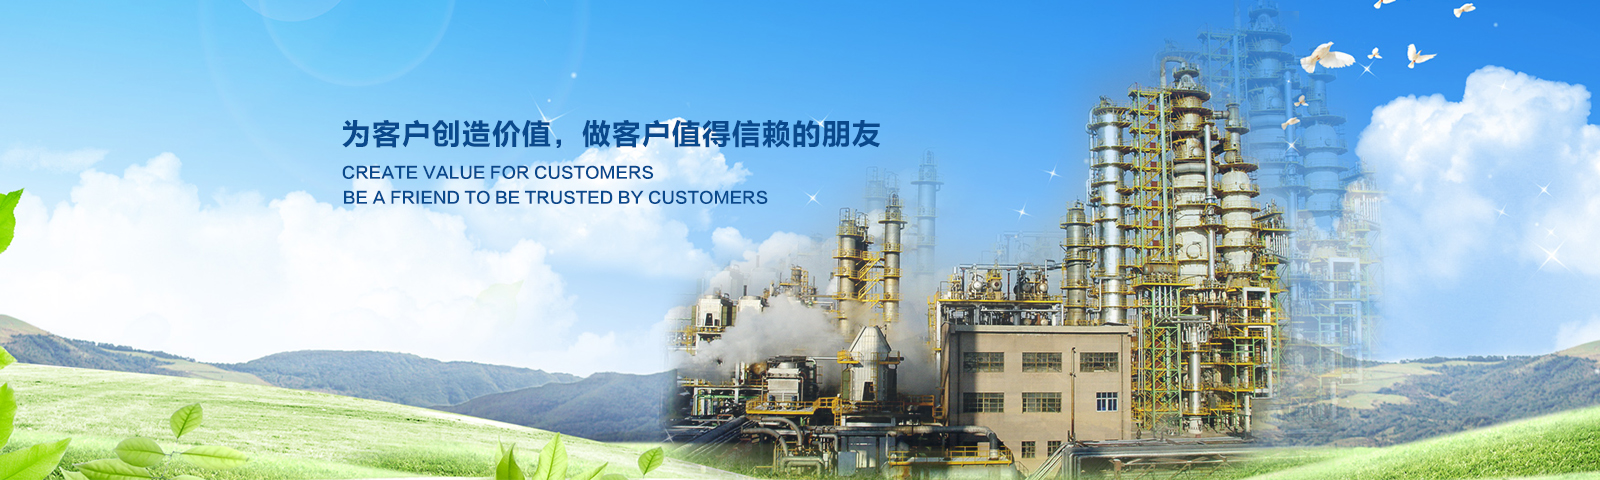 北京赛福贝特能源技术服务有限公司